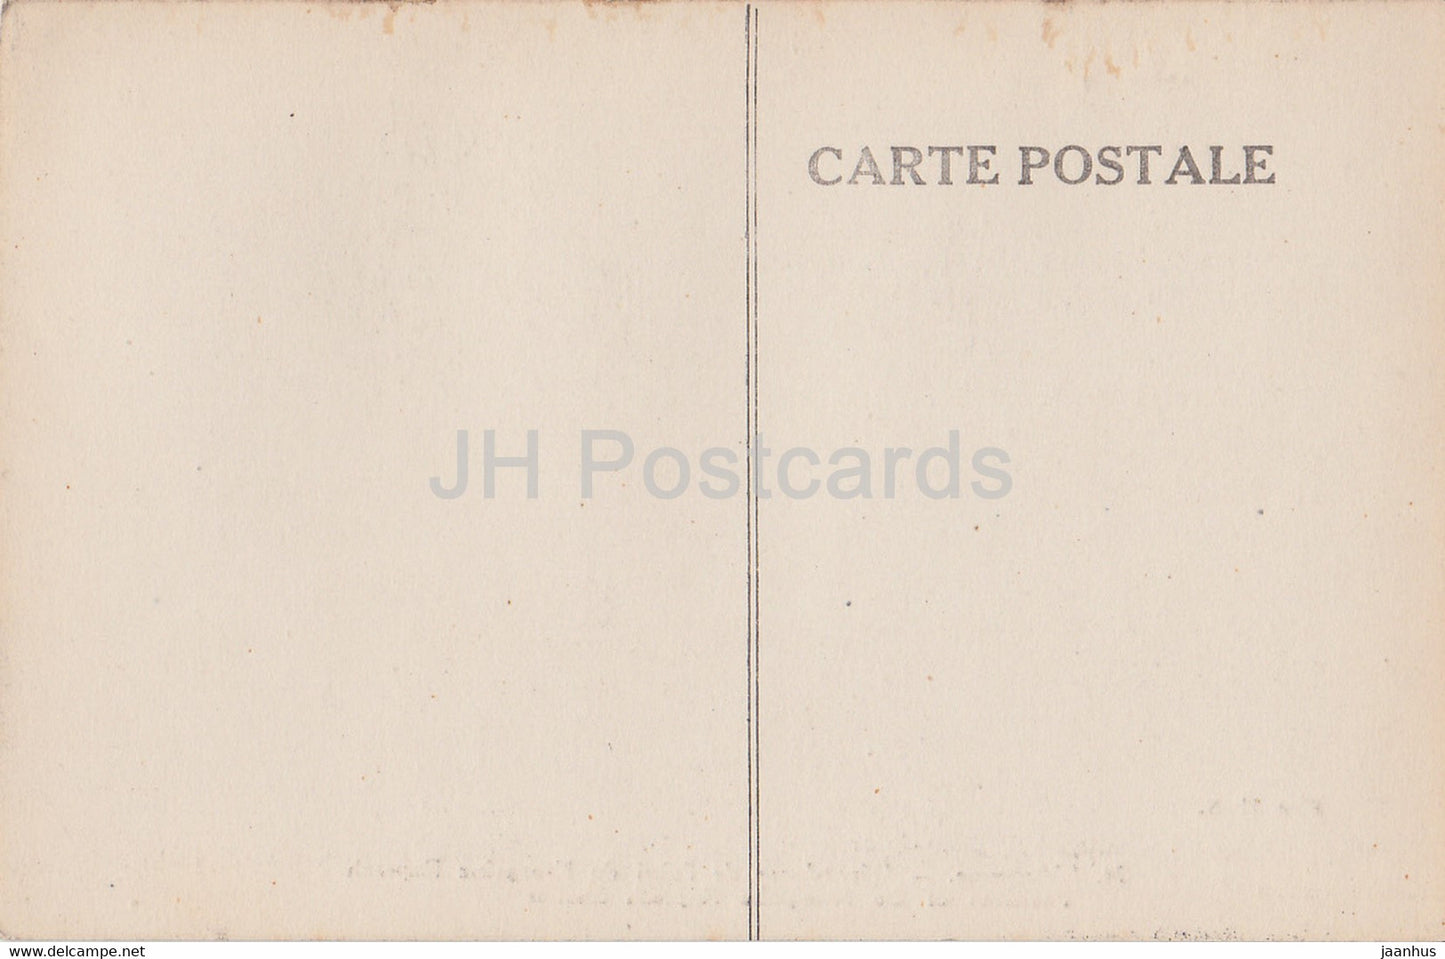 L'Argonne - Dépendance de l'abri du Kronprinz Ruprech - 74 - militaire - Première Guerre mondiale - carte postale ancienne - France - inutilisée